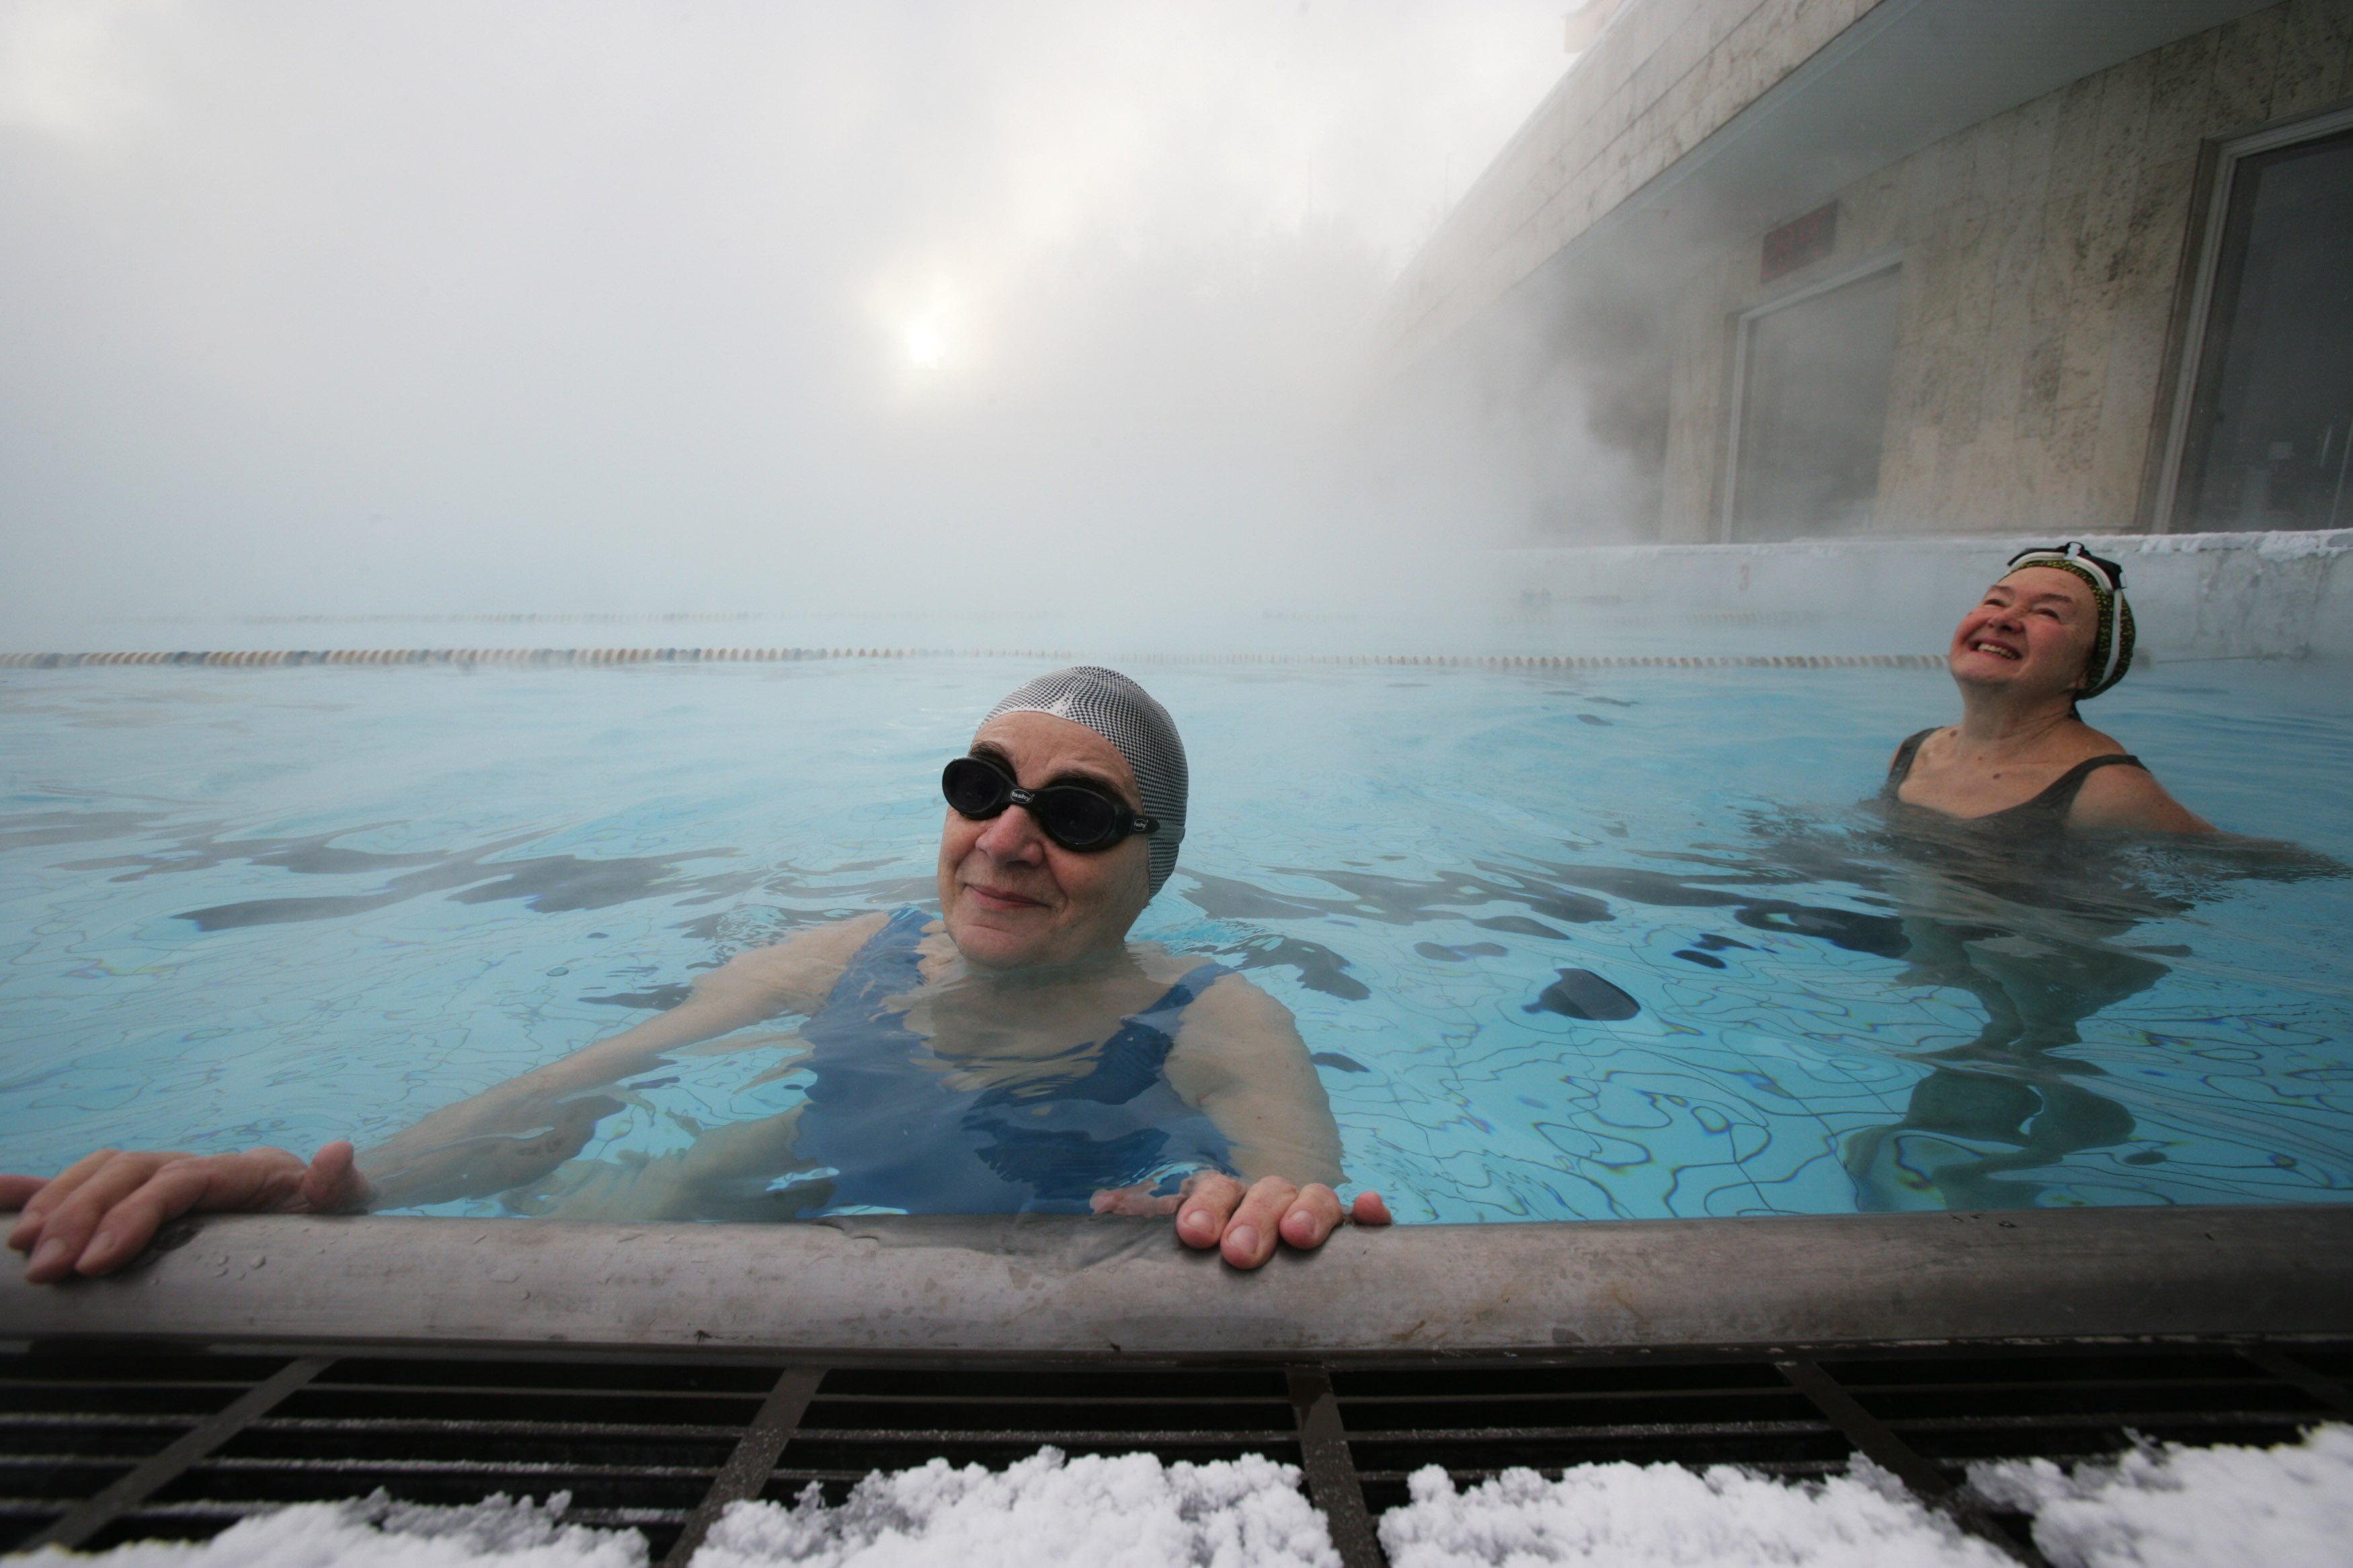 El riesgo más significativo de nadar en agua fría es la hipotermia 
(Photo by Oleg Nikishin/Pressphotos/Getty Images)